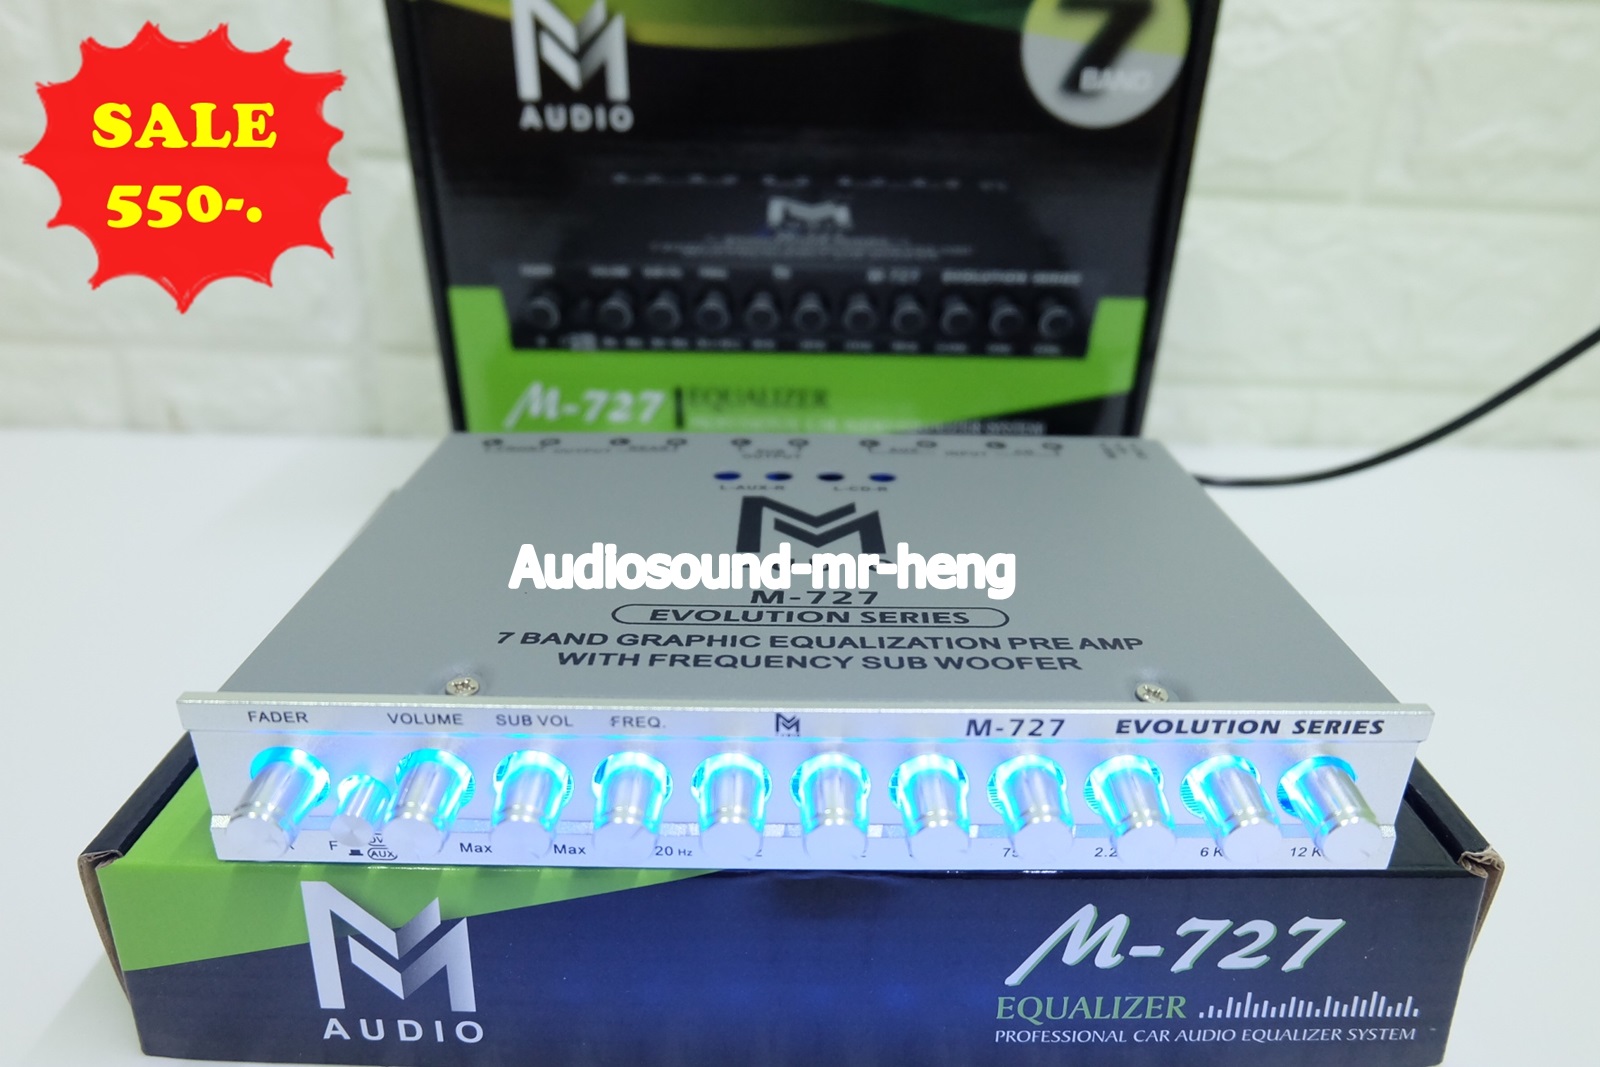 ขายปรีแอมป์ โม 7แบน M-Audio M-727 งานแบรนอย่างดี โมโรงงาน เสียงดี ของใหม่